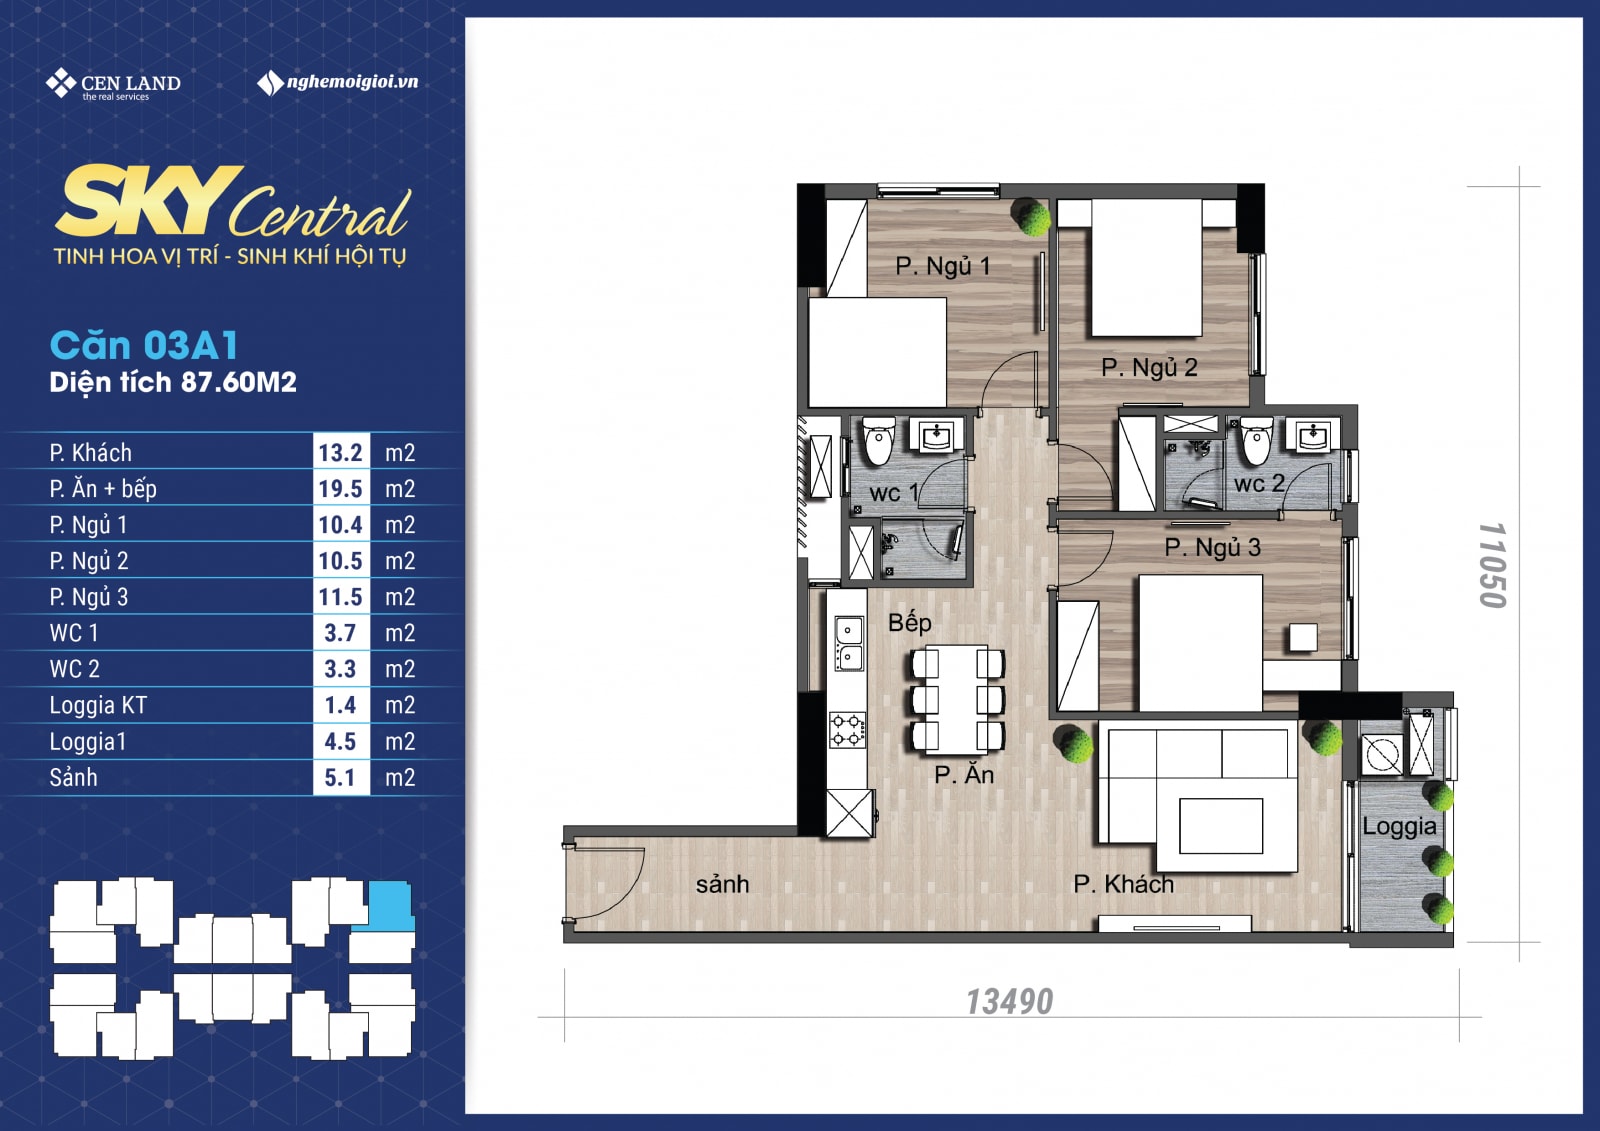 Thiết kế căn 03A1 - 3 phòng ngủ chung cư Sky Central